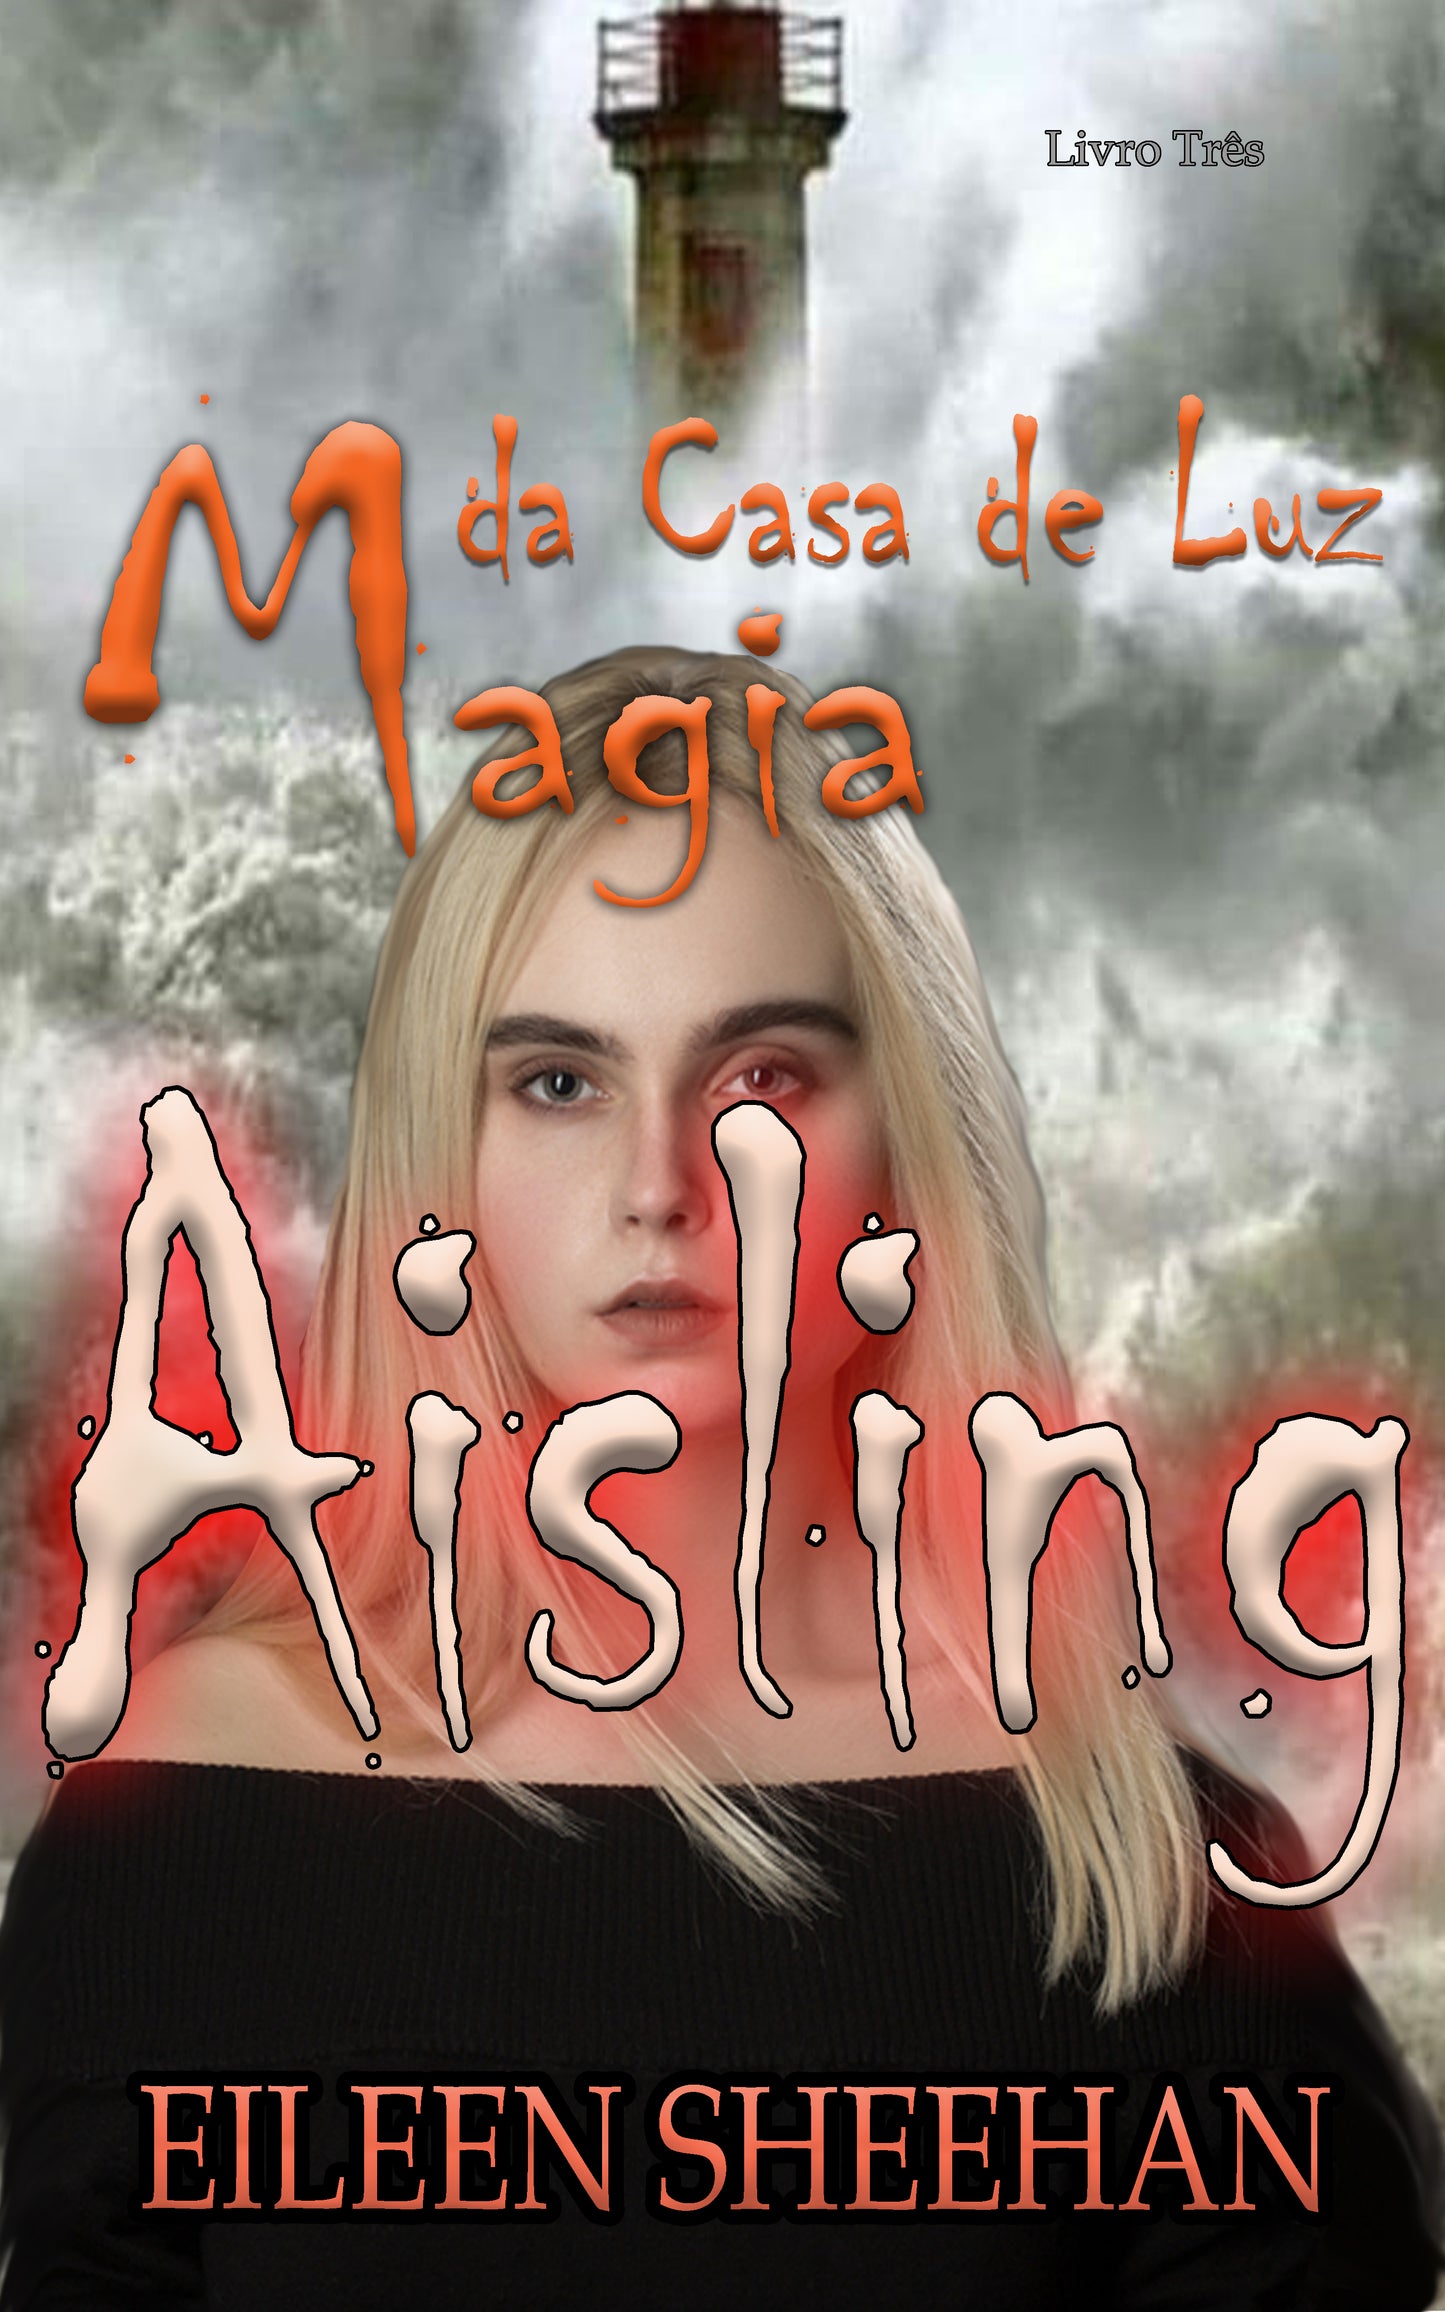 Aisling: Magia da Casa de Luz  [Livro Tres]